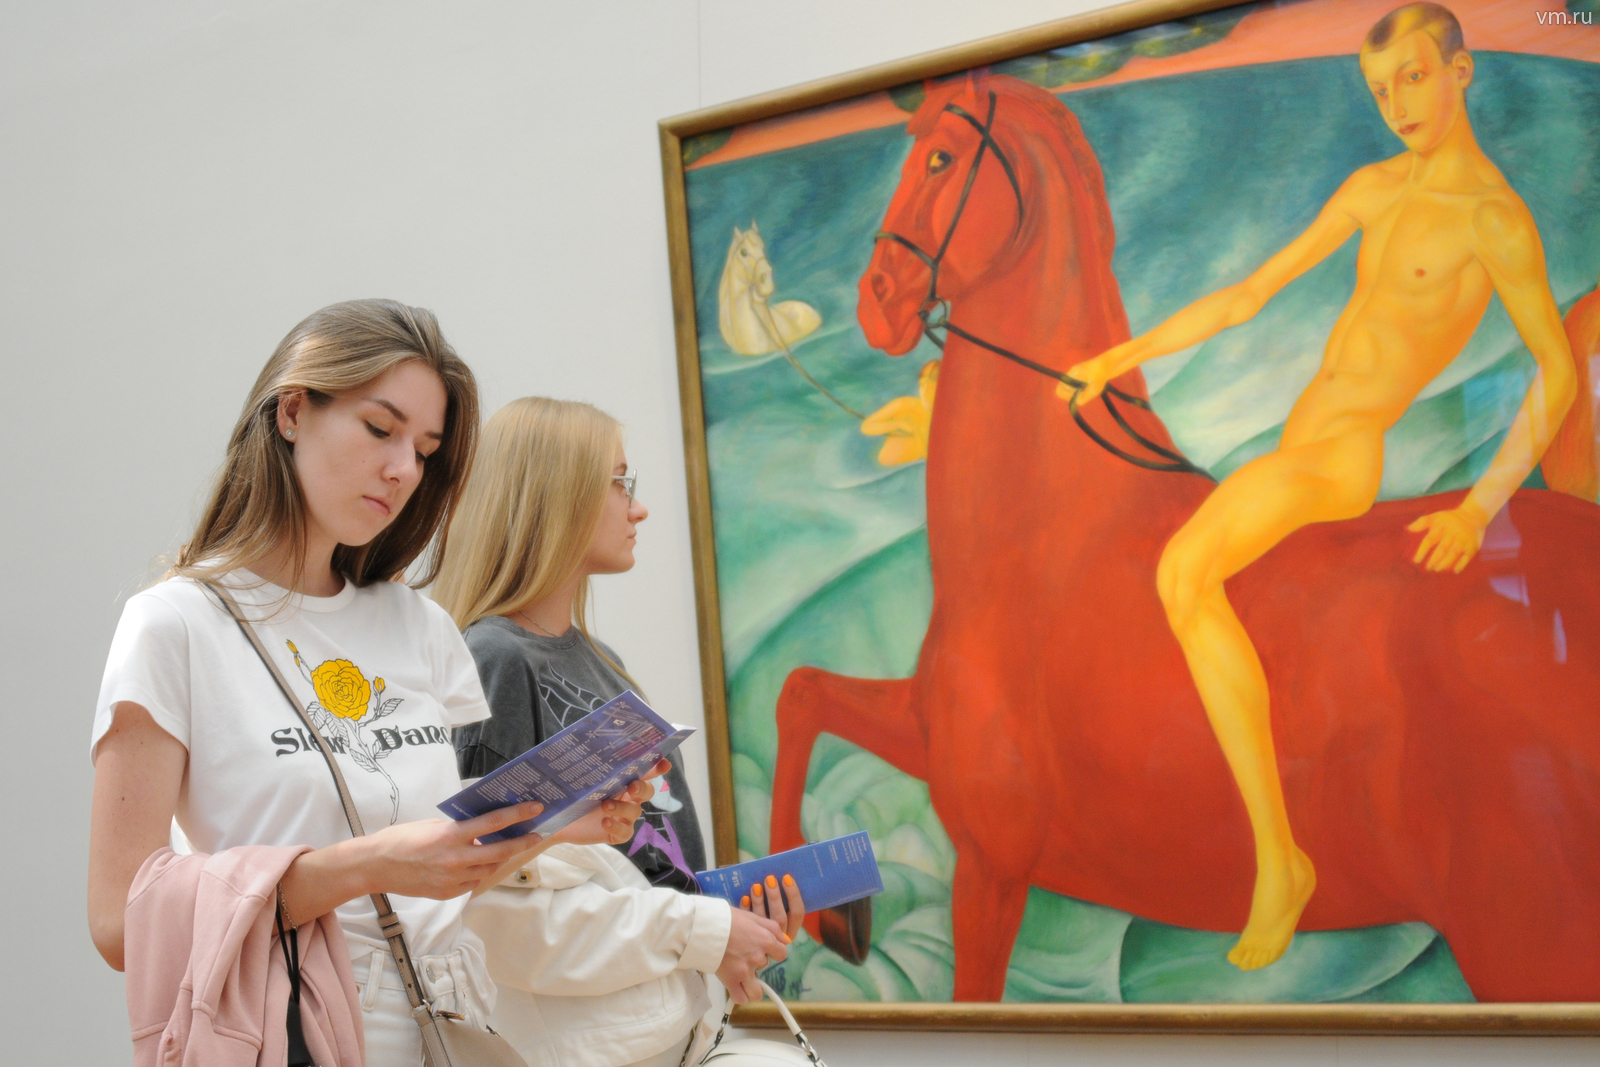 Пародия конь. Купание красного коня Третьяковская галерея.